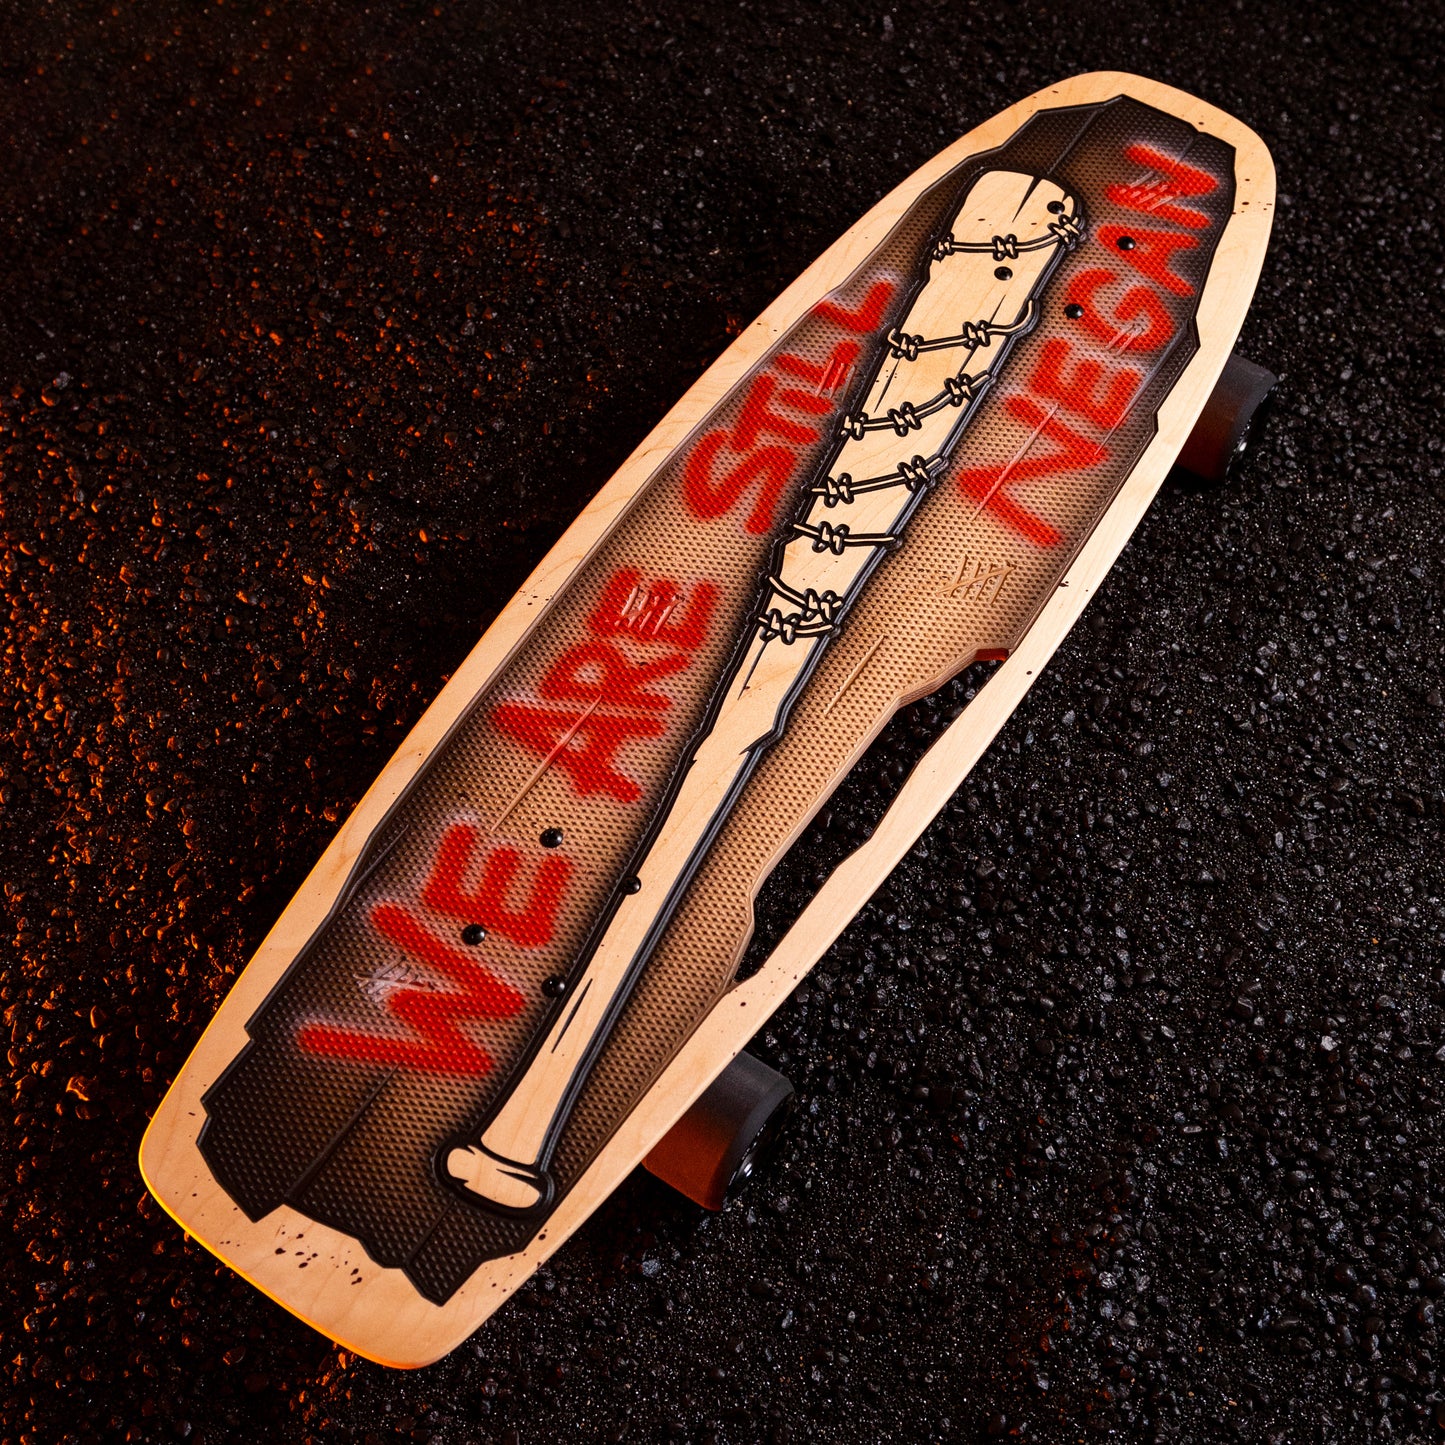 The Walking Dead x Bear Walker Boards Negan Skateboard